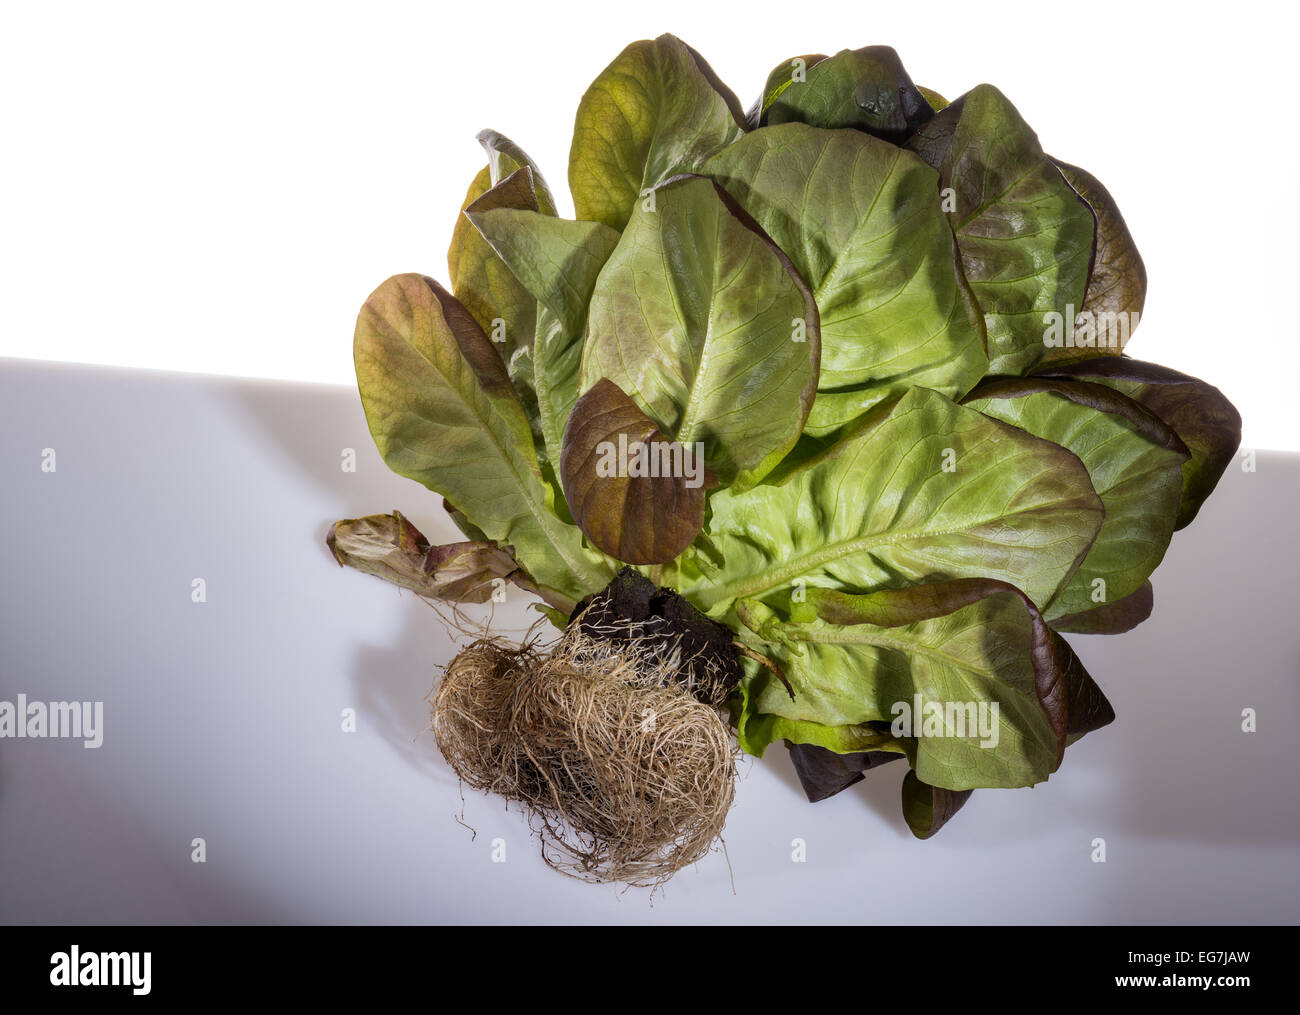 Salanova foglia di lattuga insalata sala nova fresco verde salute sano vendita con root balla con nuove radici di allevamento con radici elegante Foto Stock